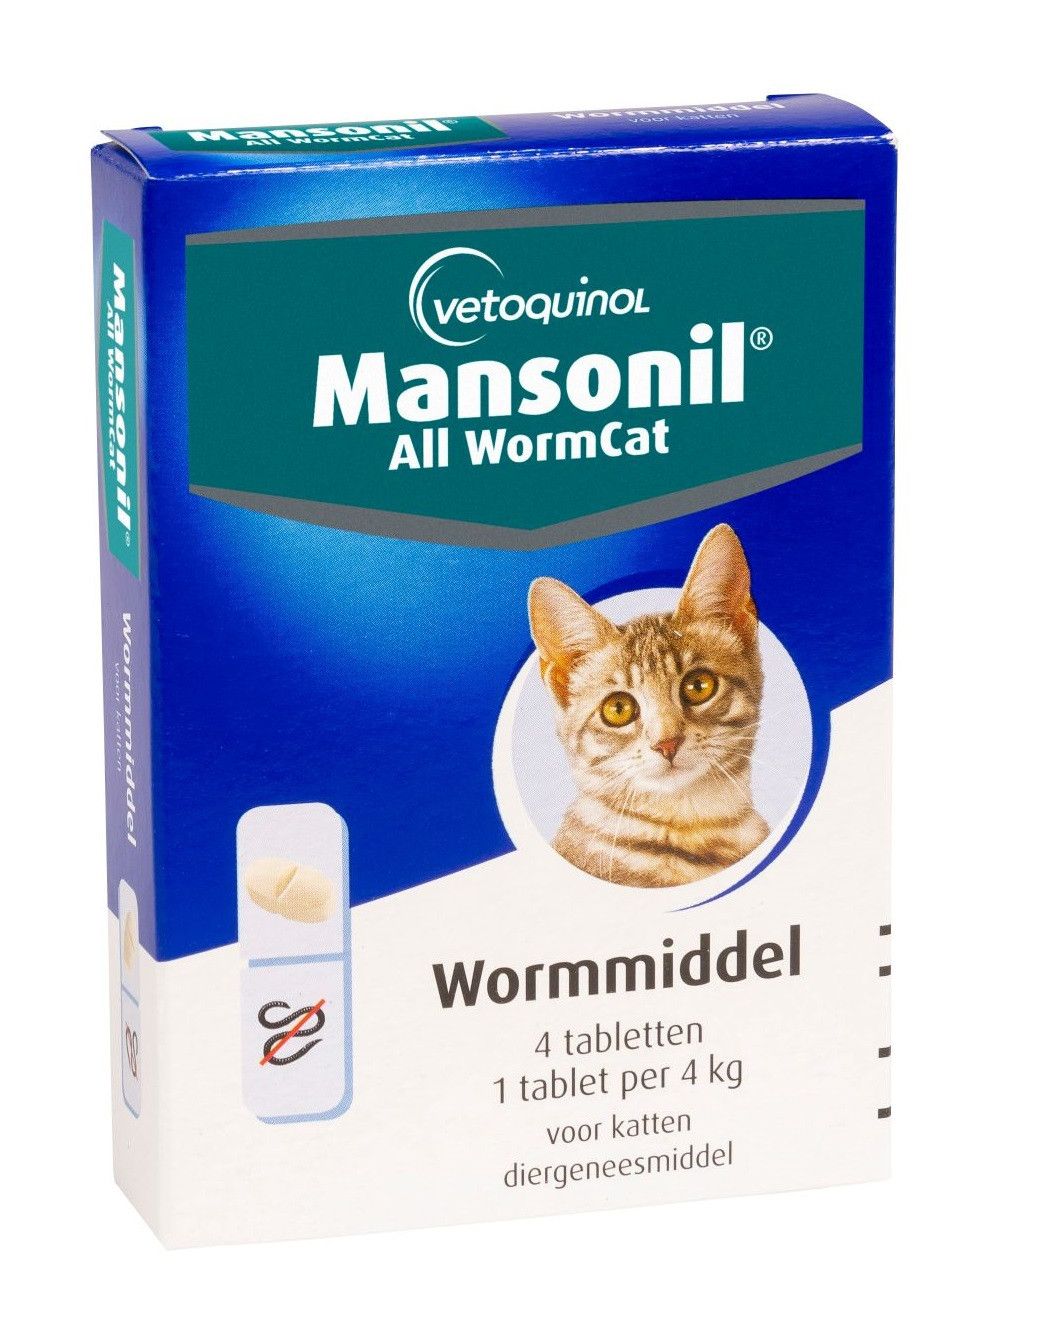 Mansonil All Worm Cat für die Katze